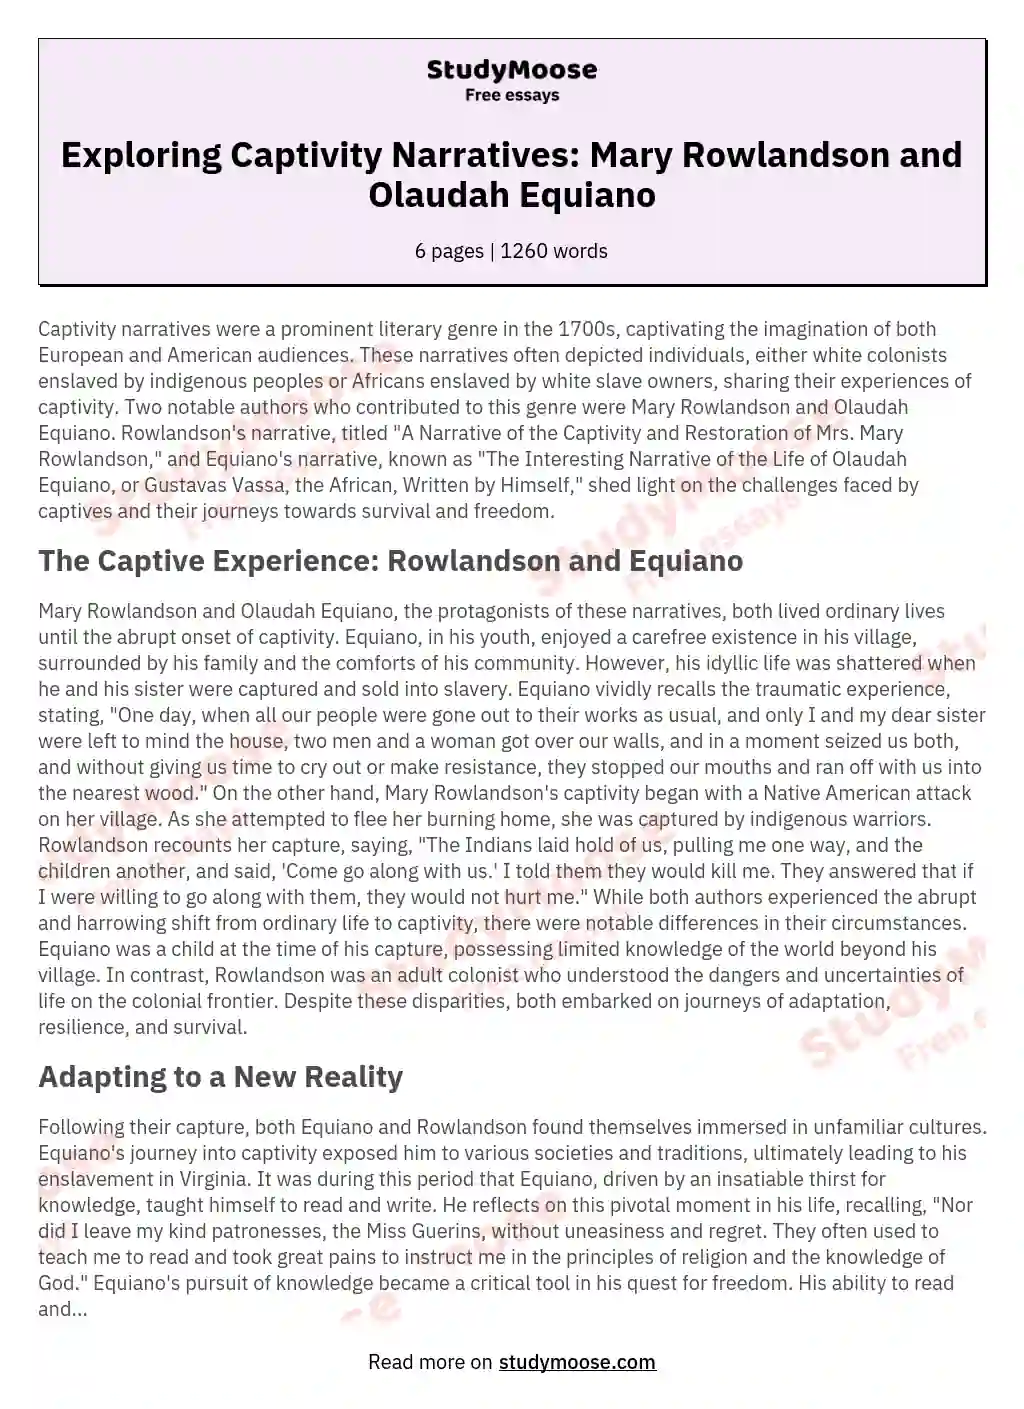 Exploring Captivity Narratives: Mary Rowlandson and Olaudah Equiano ...